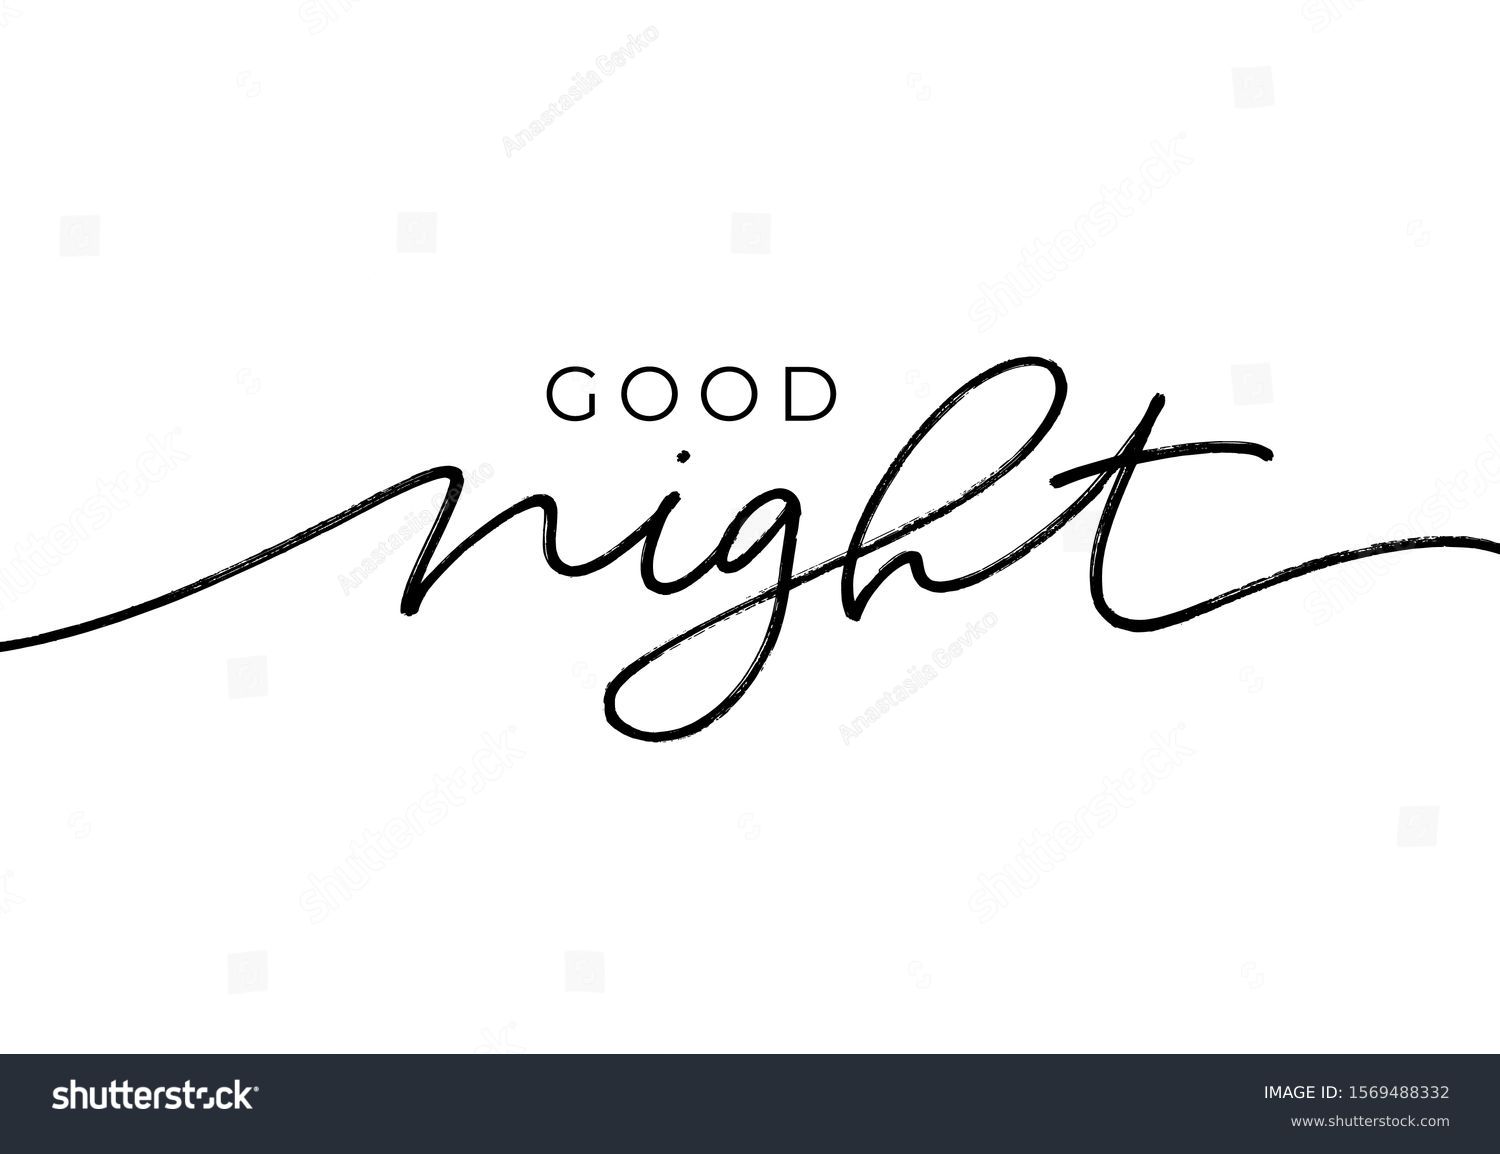 Good-night Stock Vectors, Images & Vector Art | Shutterstock